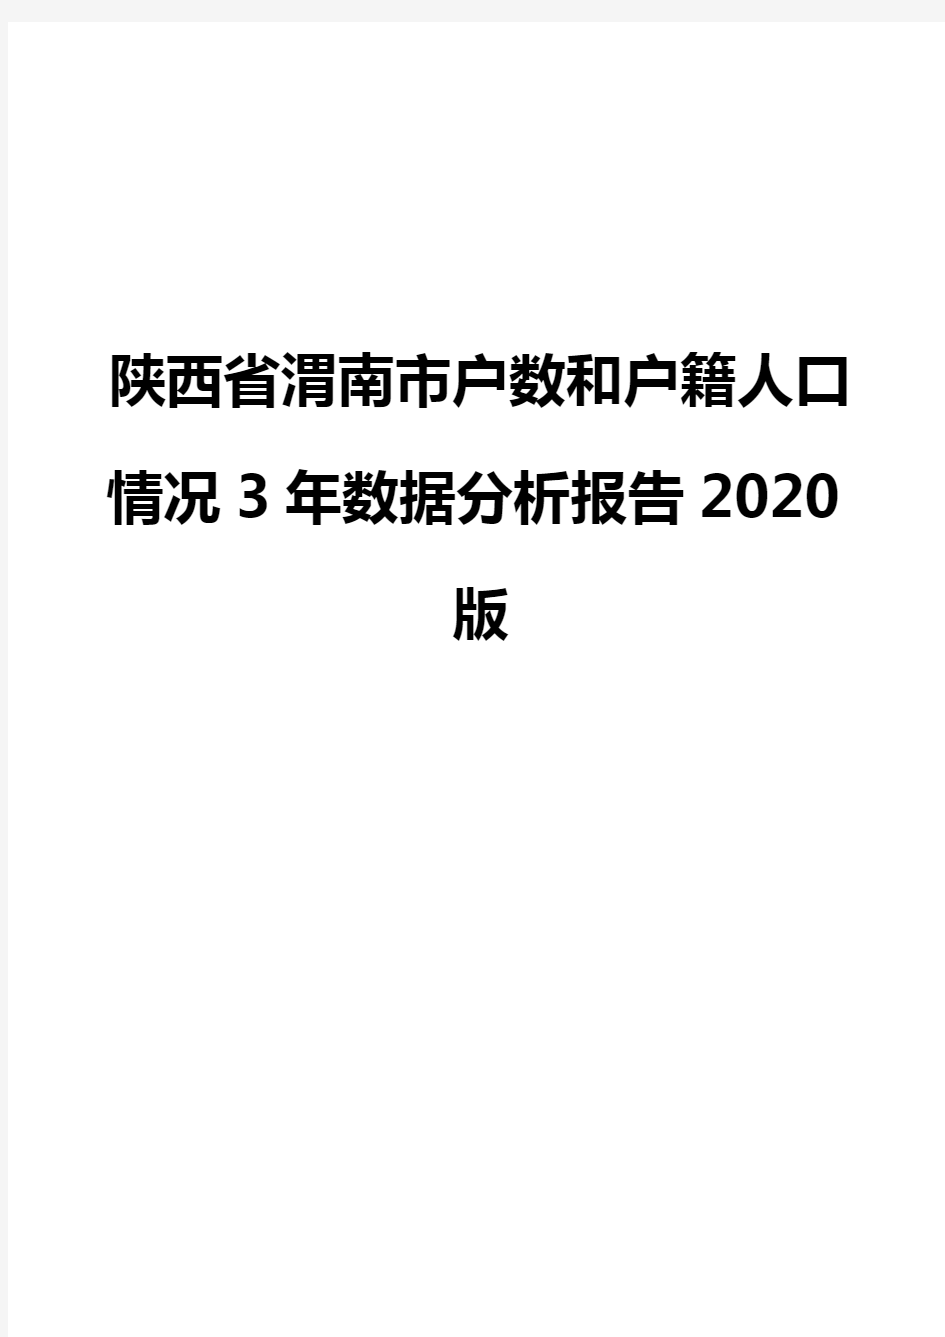 陕西省渭南市户数和户籍人口情况3年数据分析报告2020版